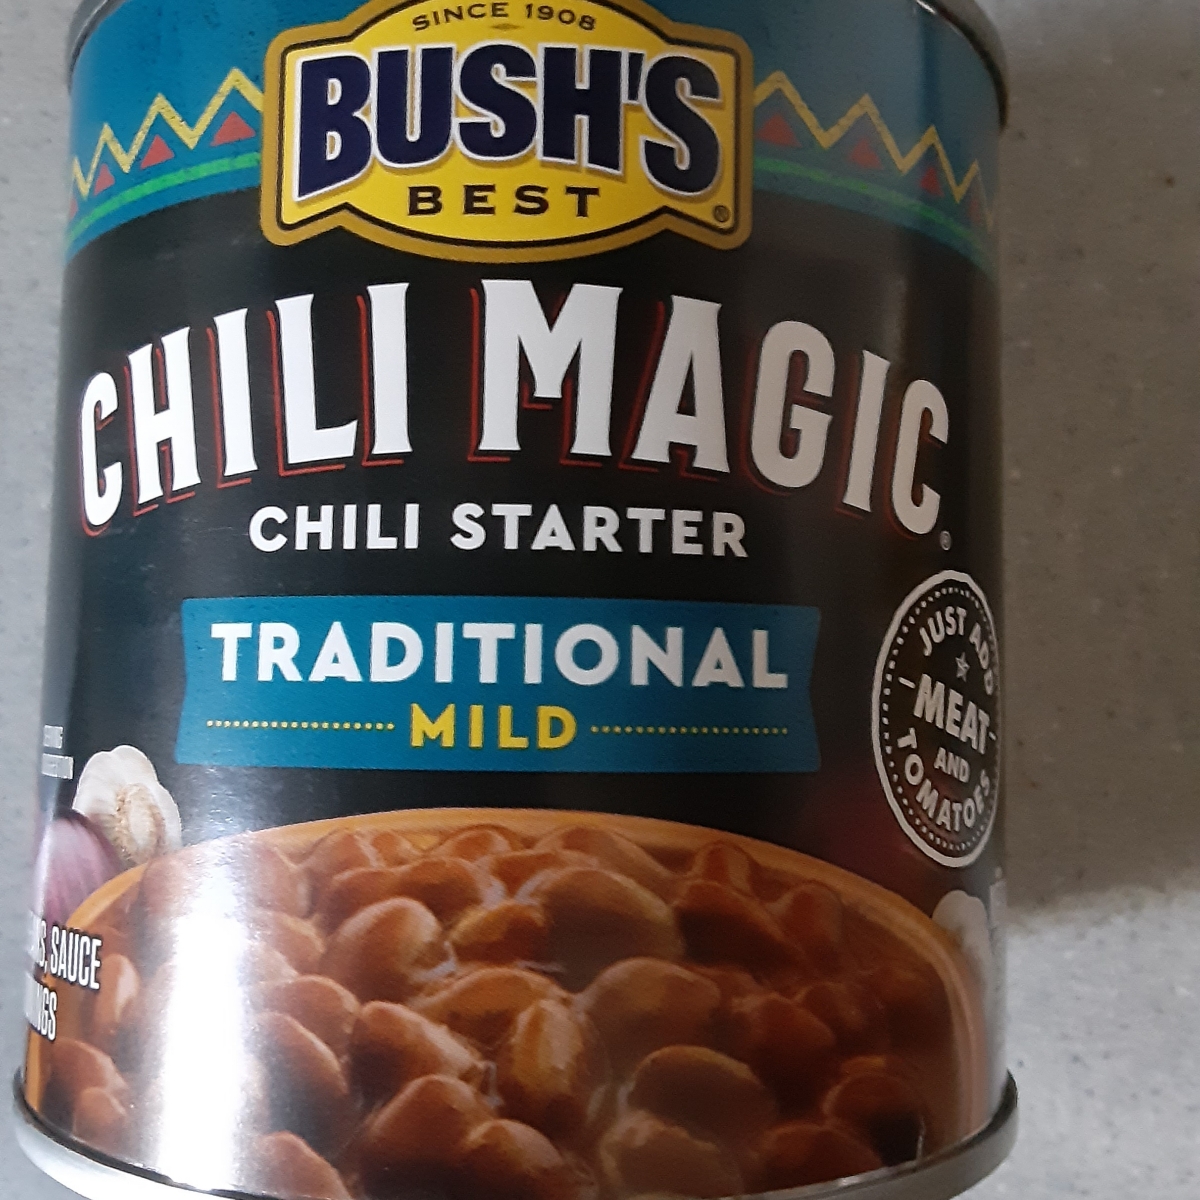 BUSH'S® Chili Magic Chili Starter Traditional Mild Reviews